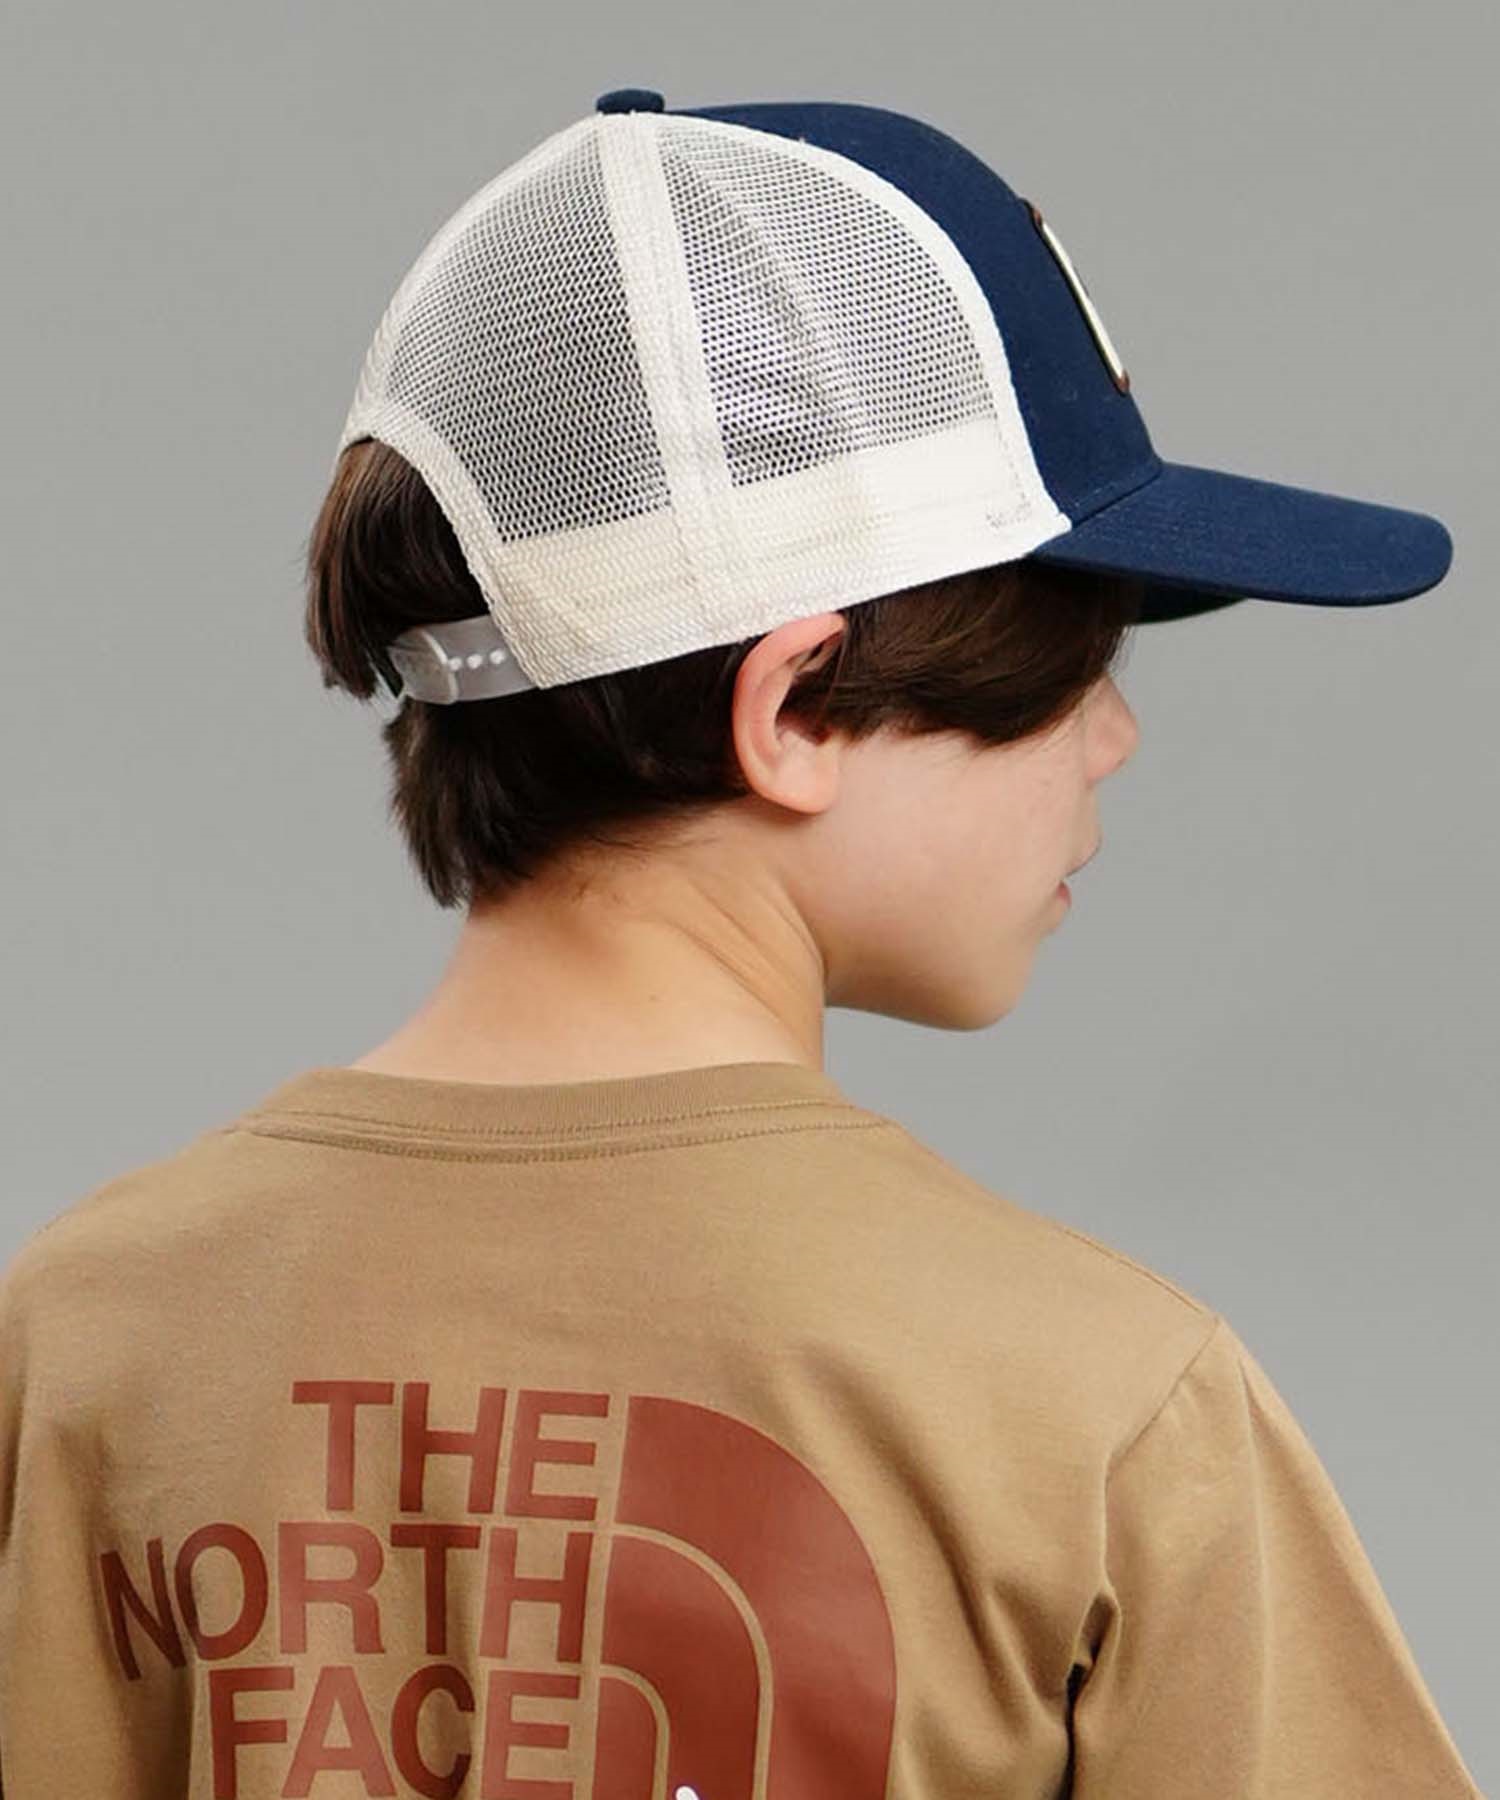 THE NORTH FACE ザ・ノース・フェイス TRUCKER MESH CAP トラッカーメッシュキャップ キッズ キャップ NNJ02405(UN-M)